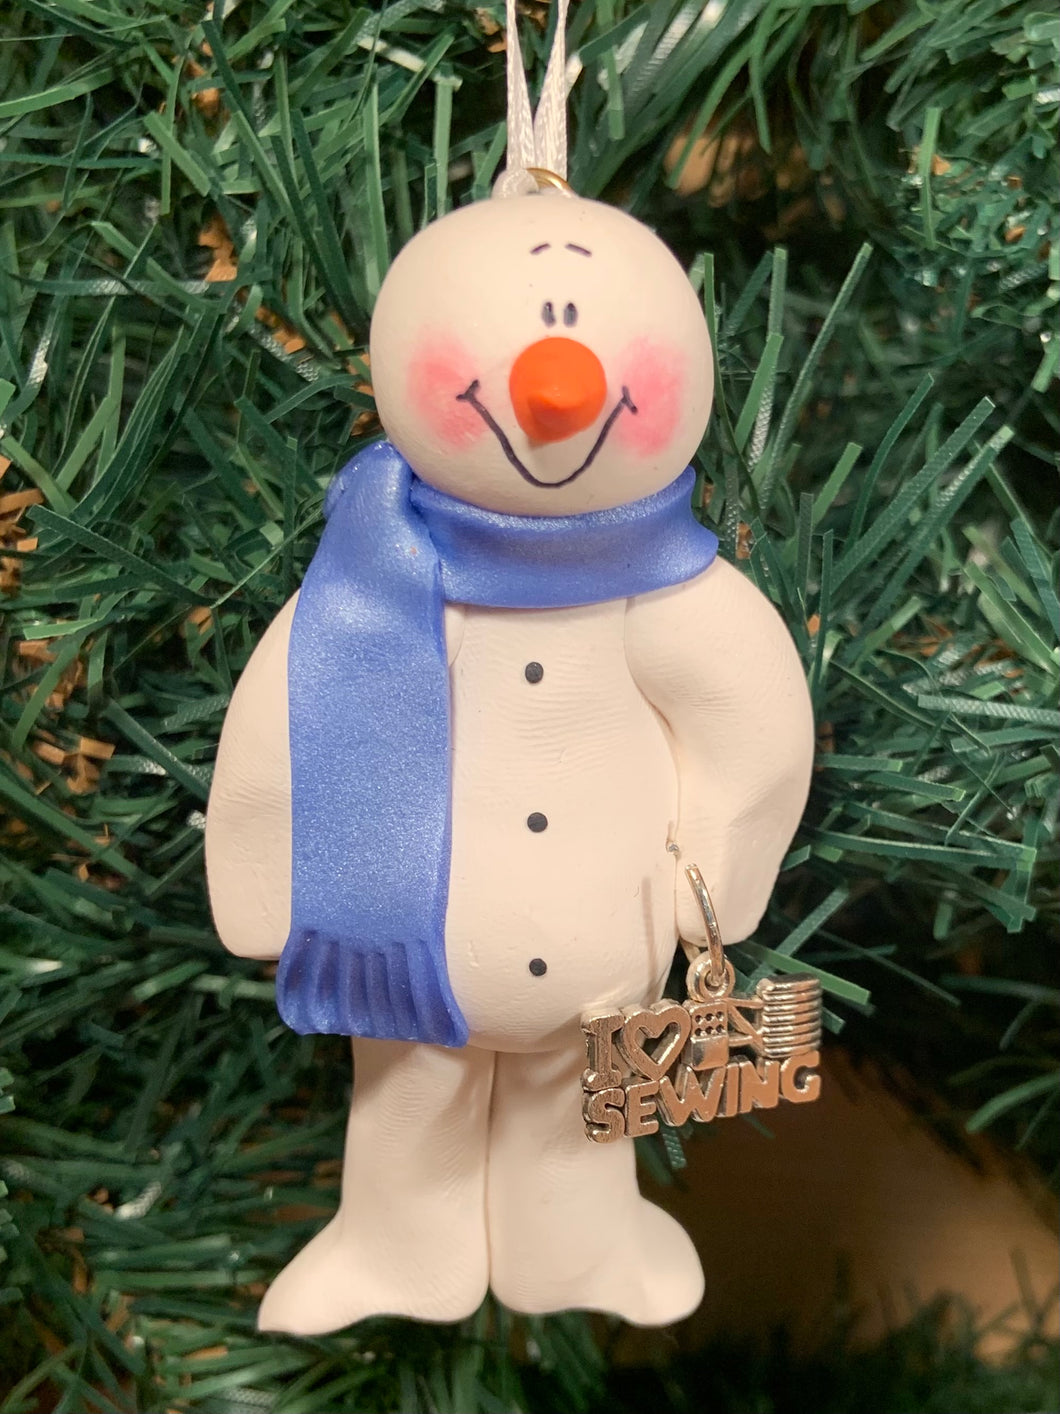 Sewing Snowman Tree Ornament